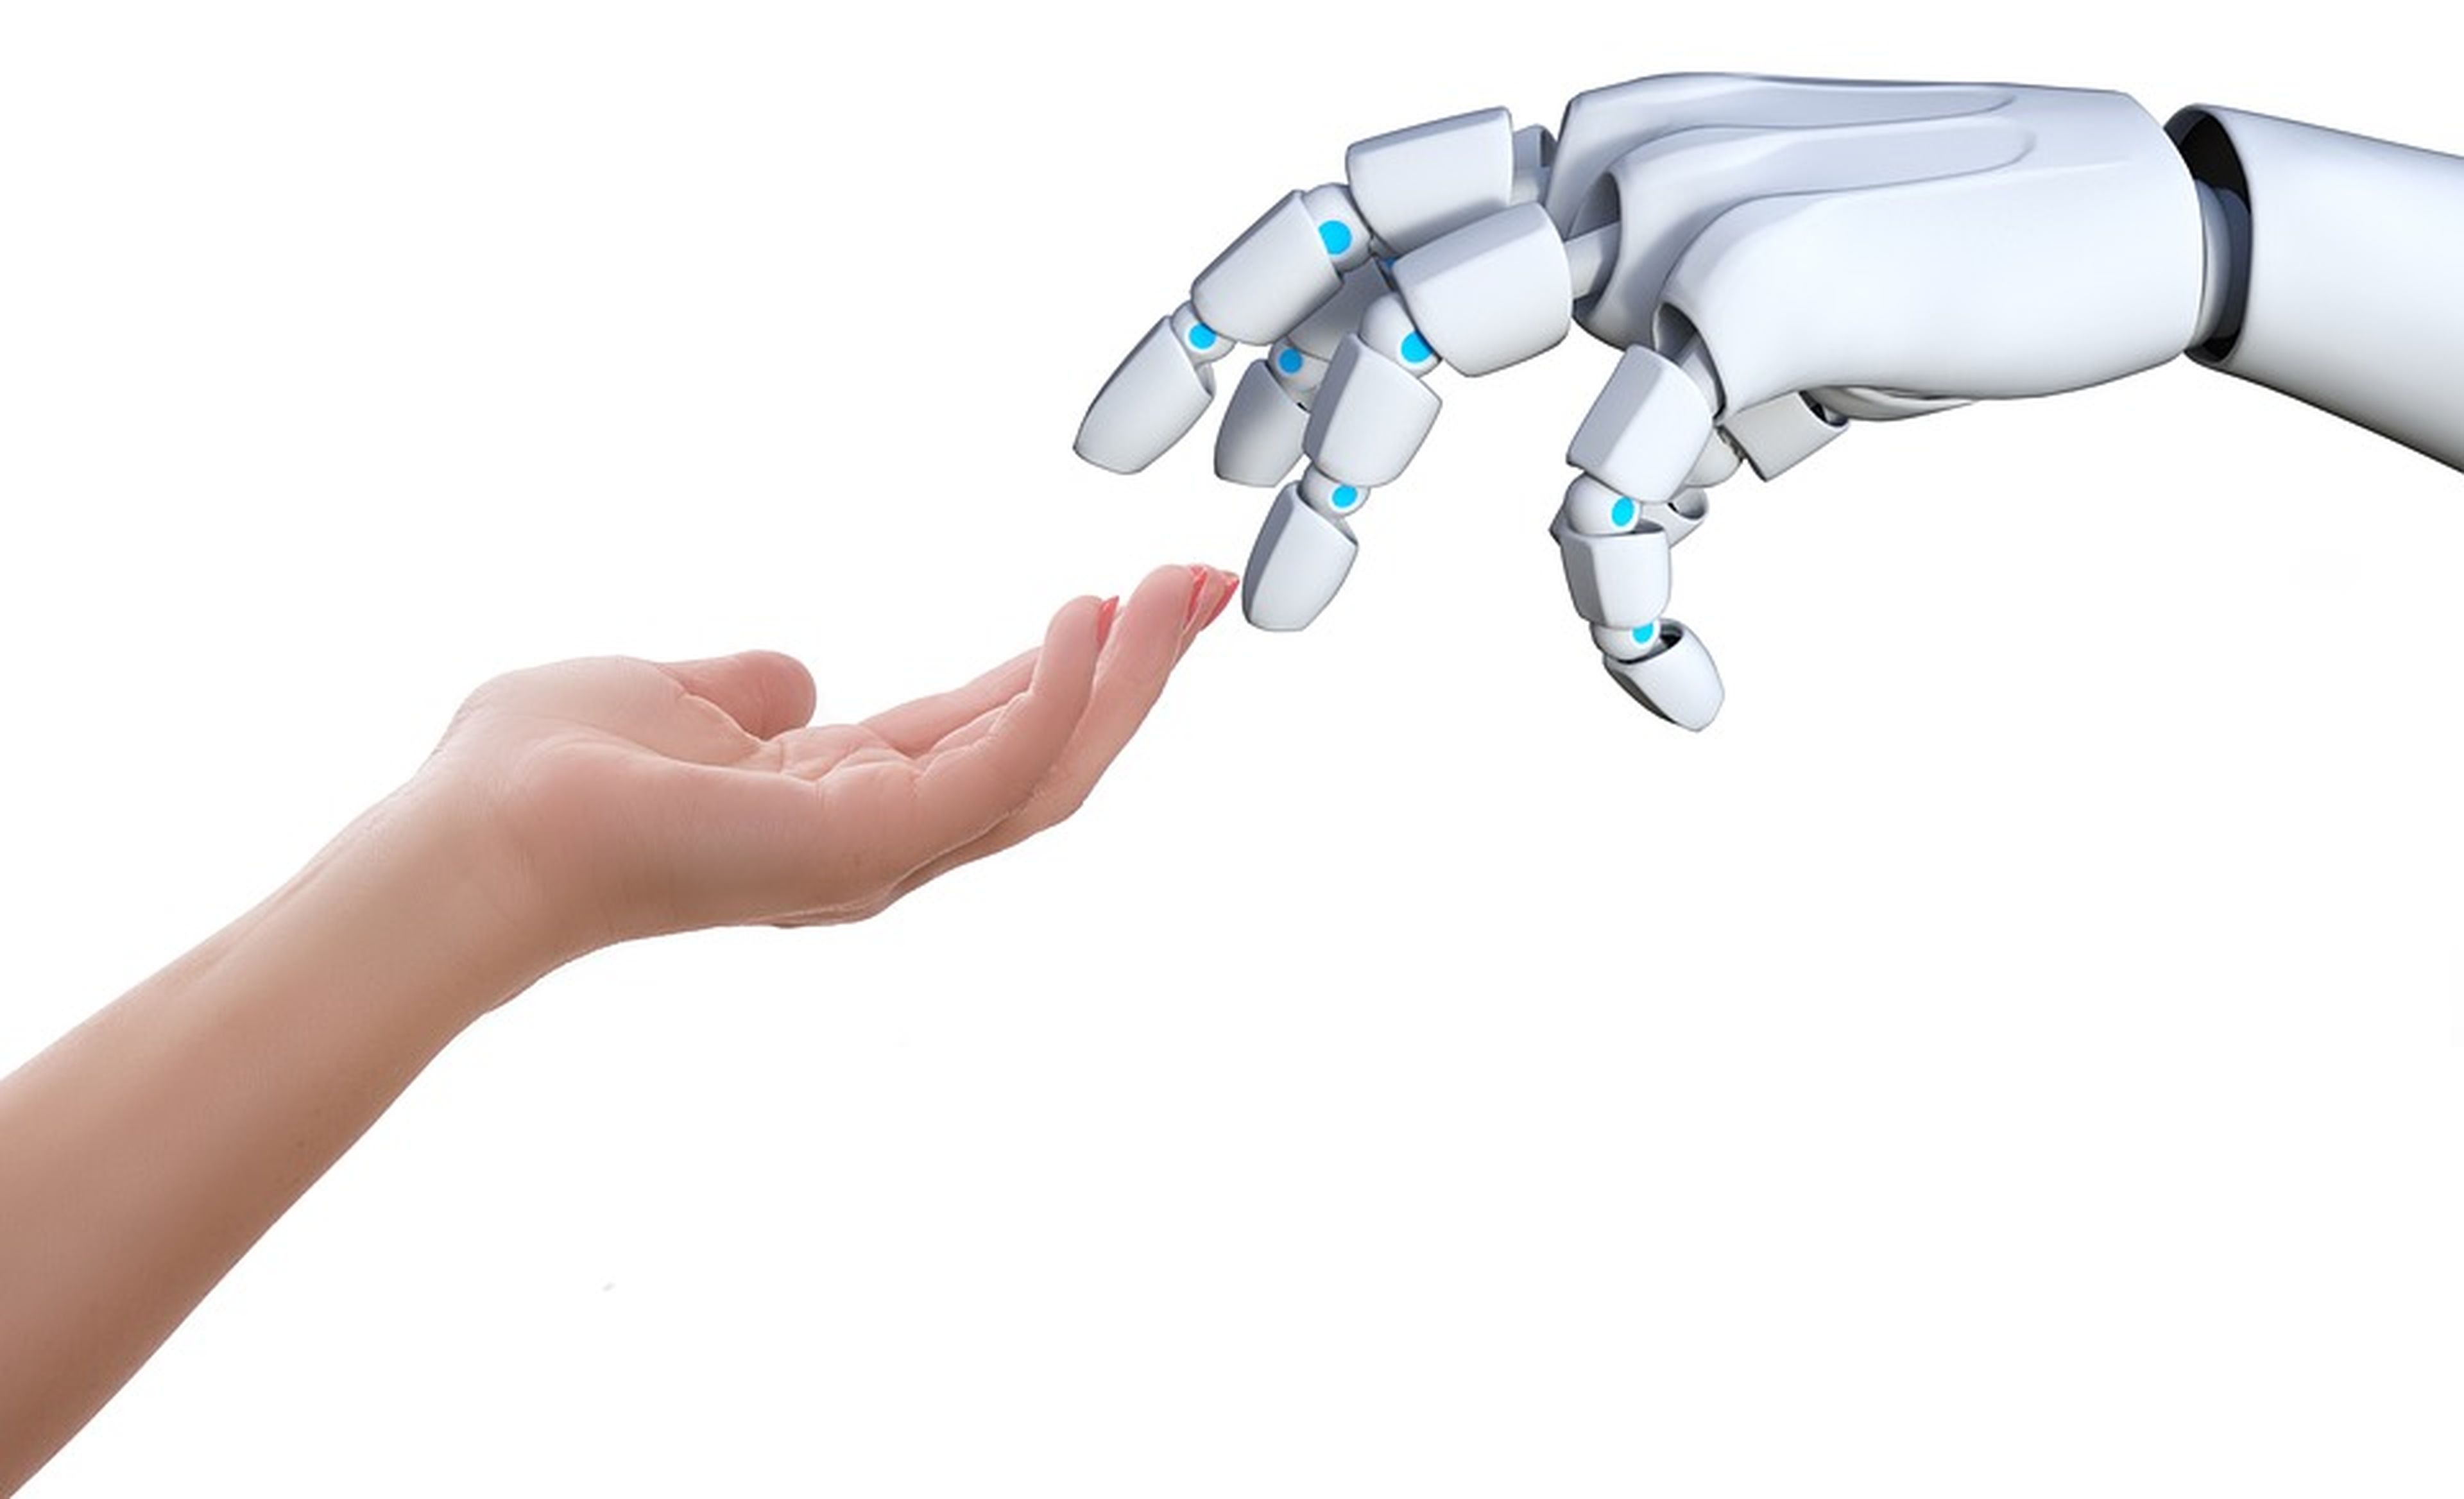 Mano humana y mano de un robot